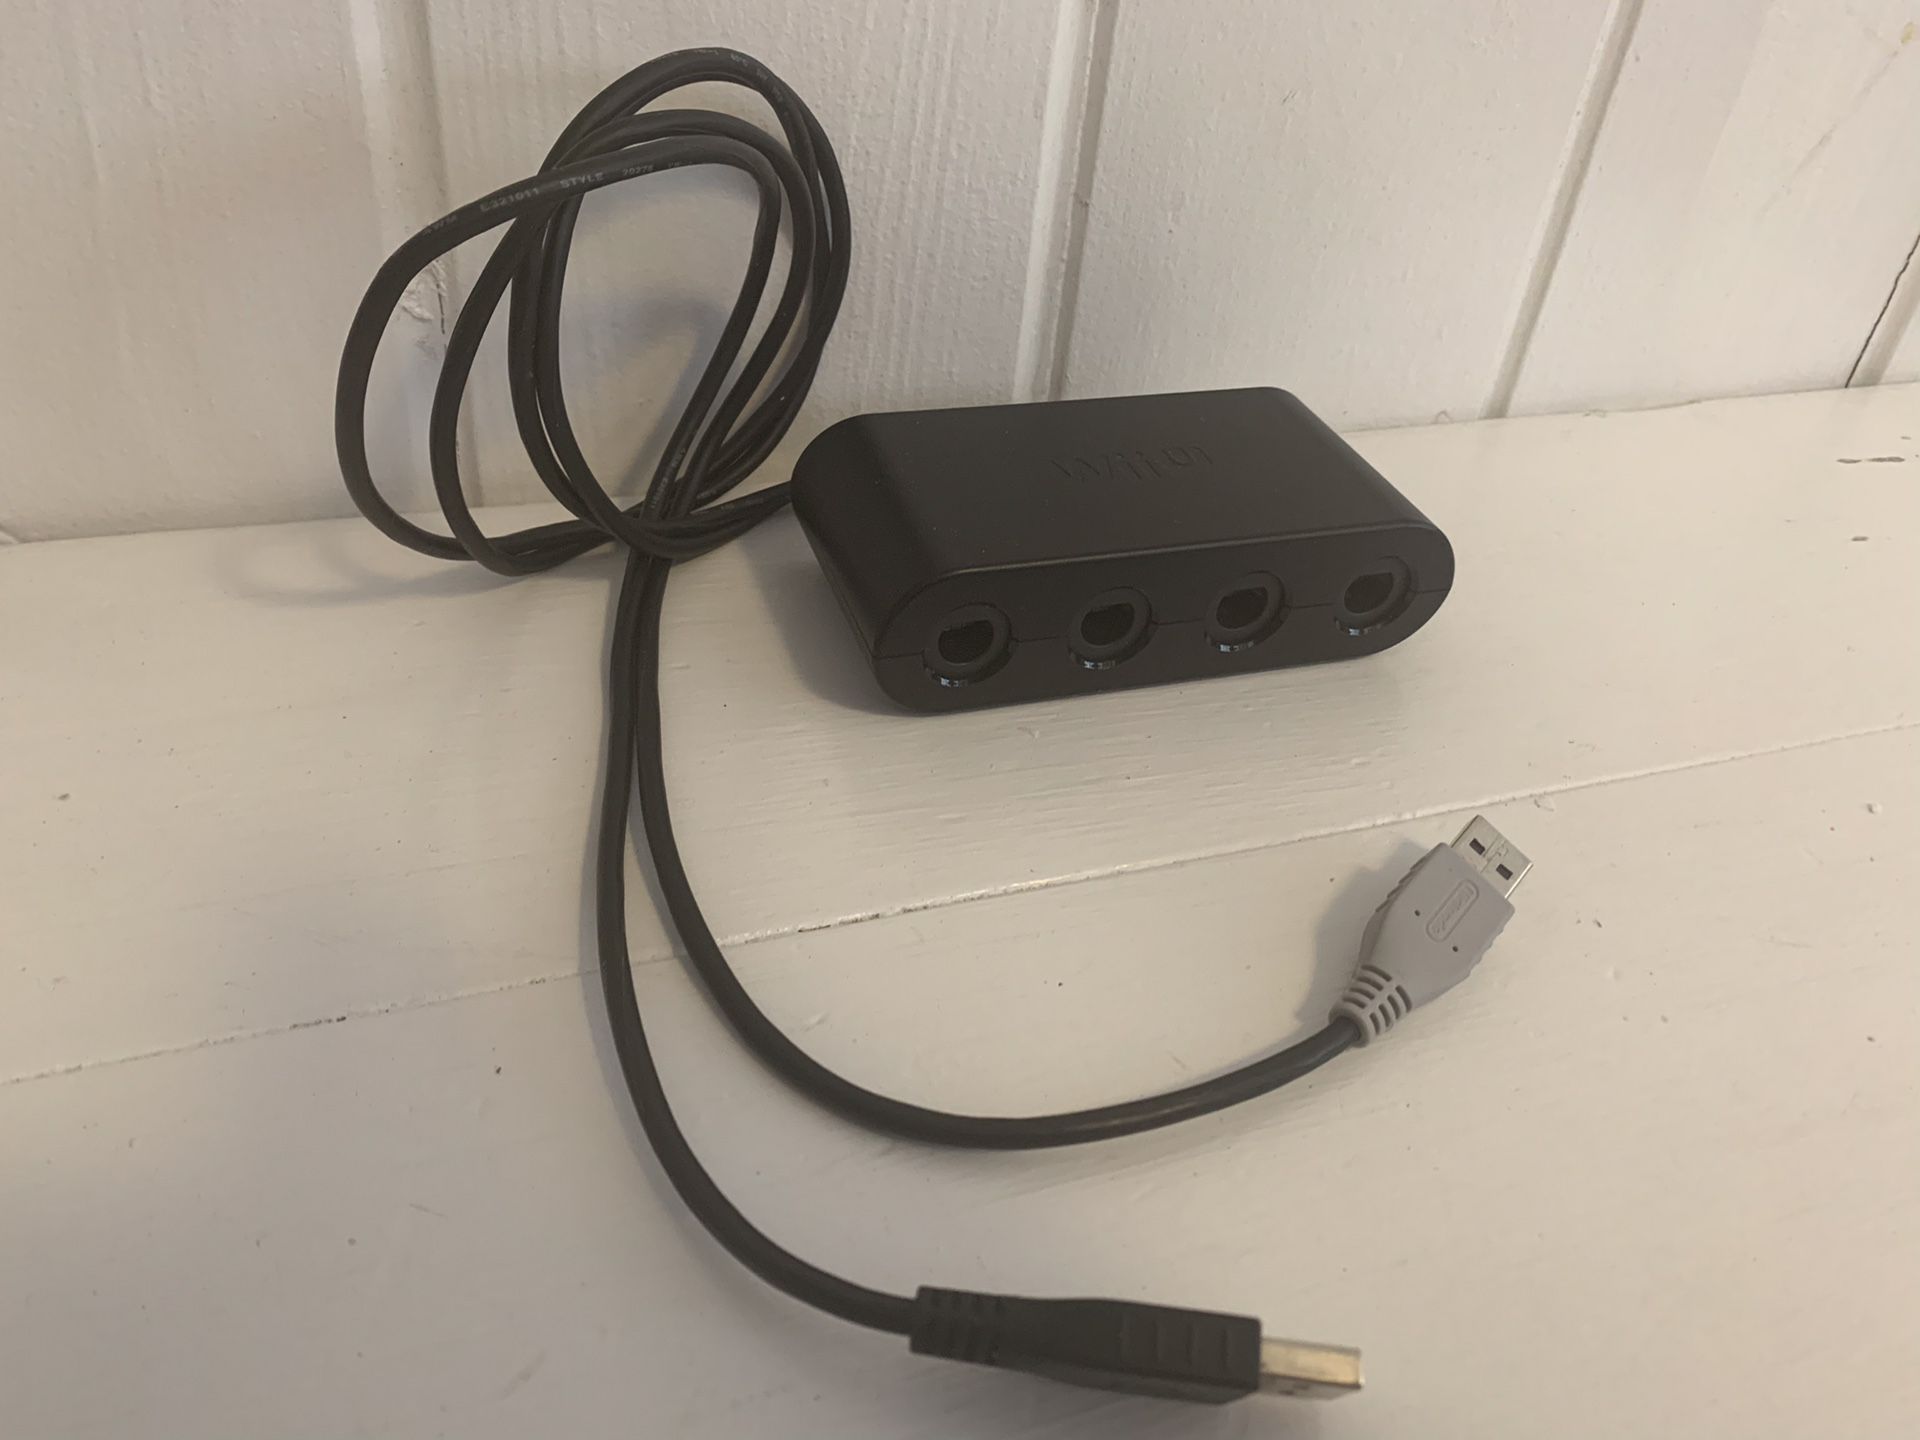 GameCube adapter